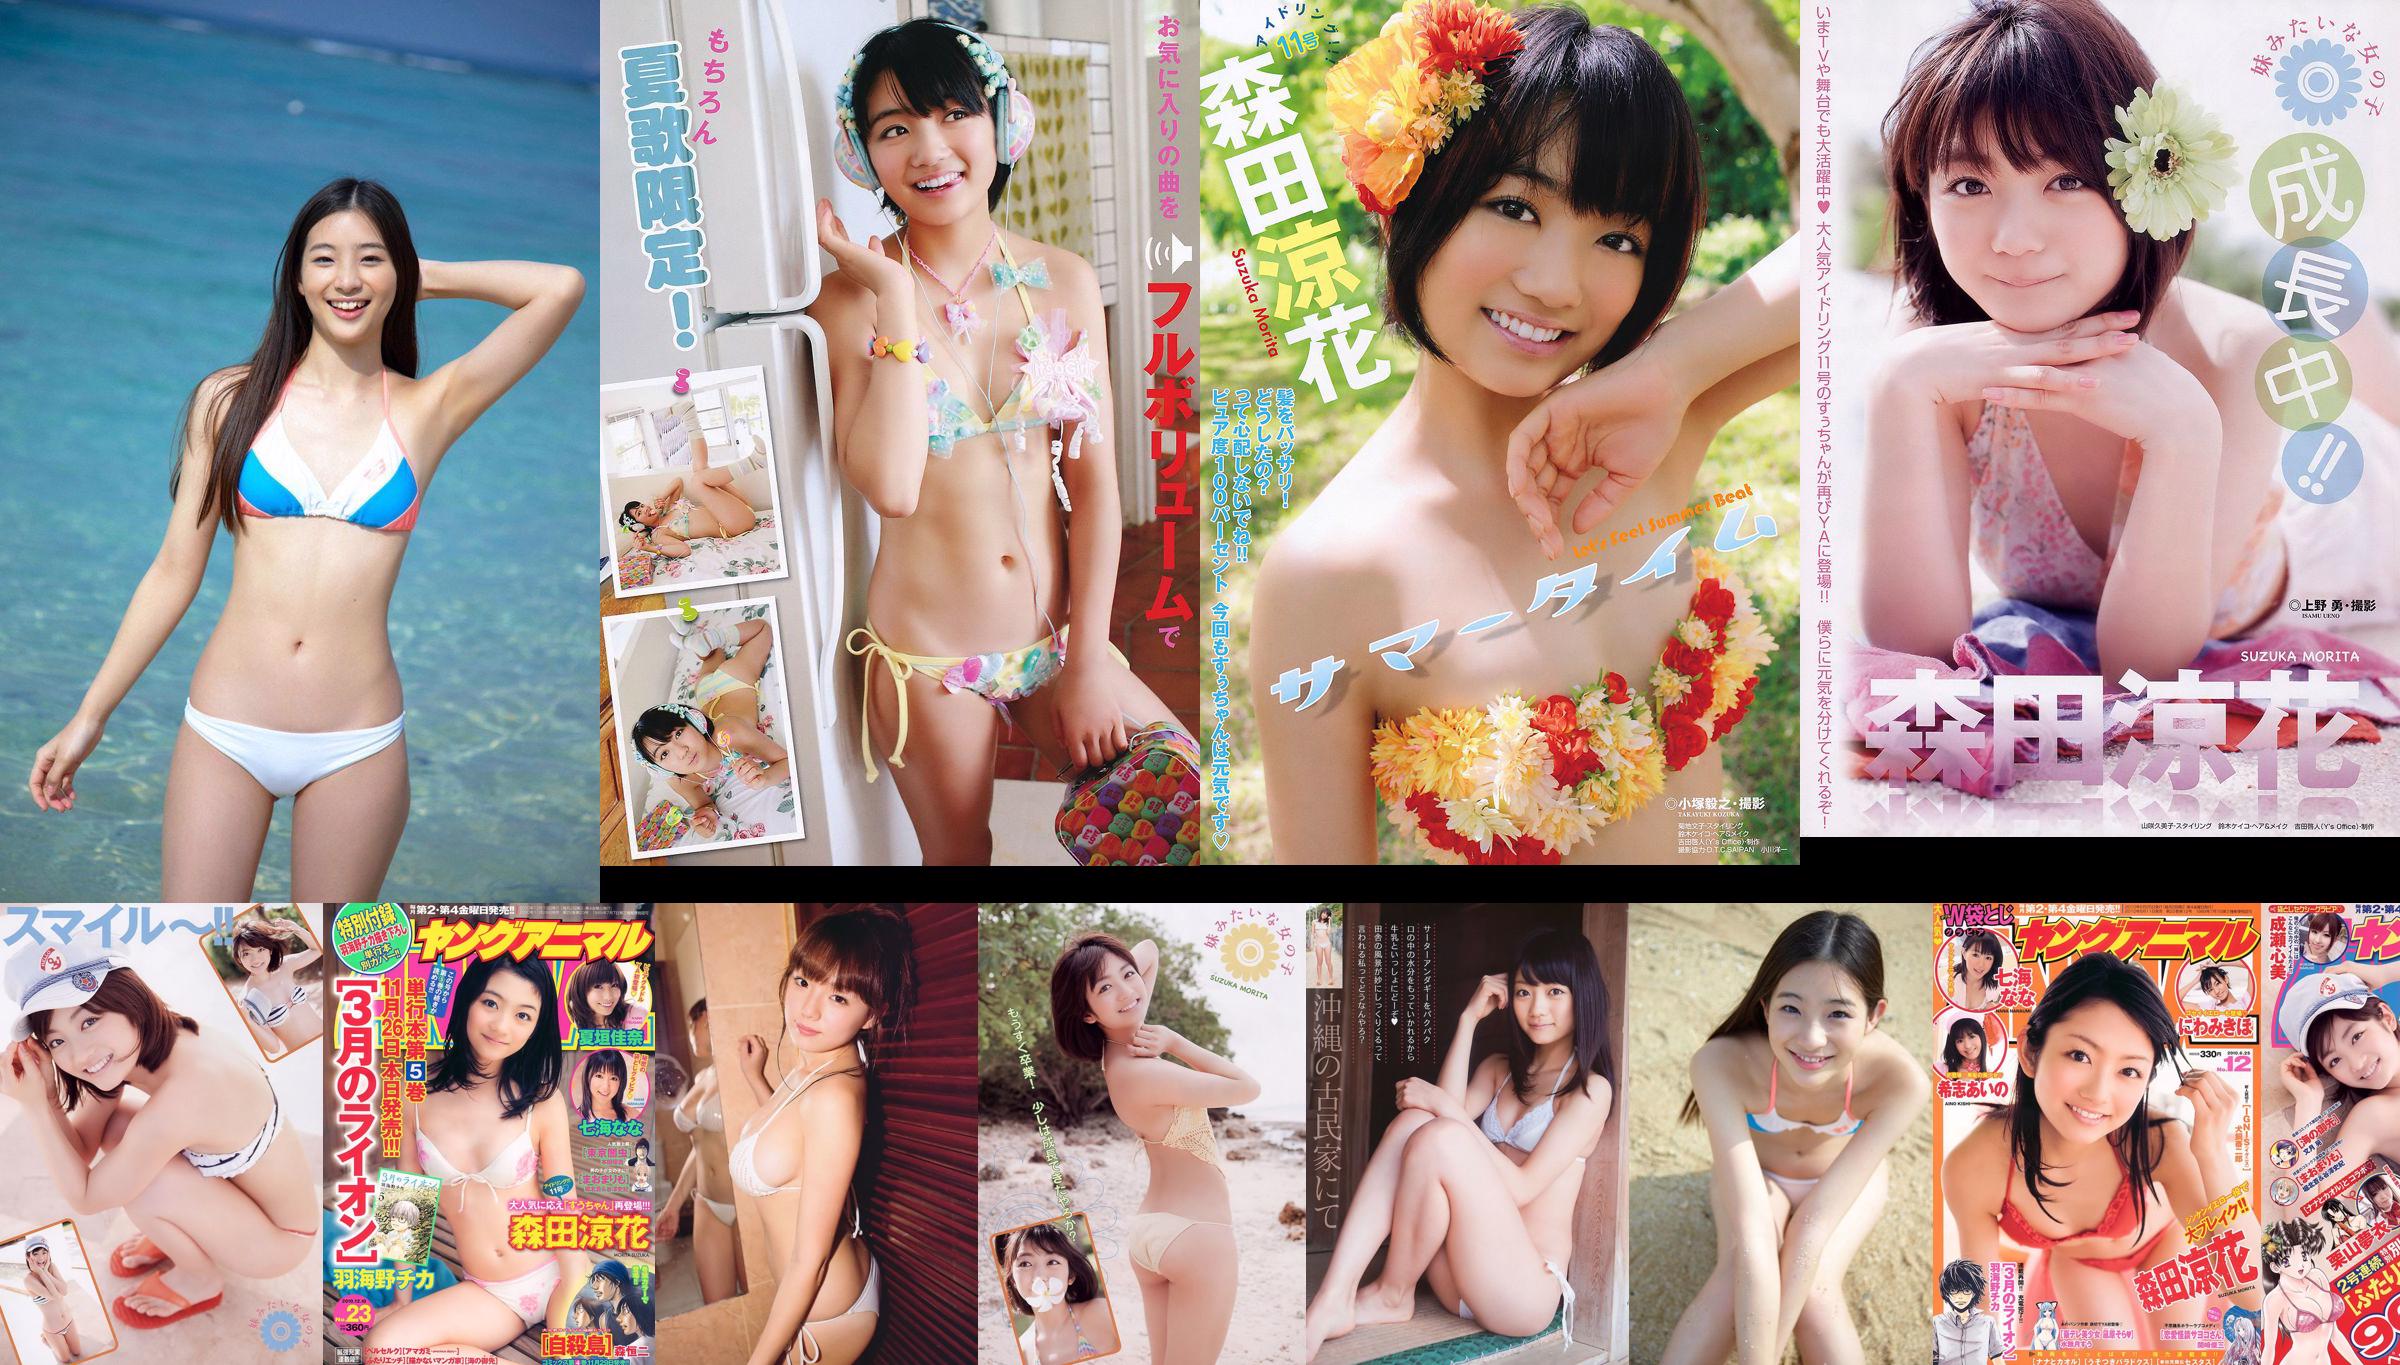 [Weekly Big Comic Spirits] Akari Hayami 2014 No.46 Photograph No.2eb7e0 Page 4